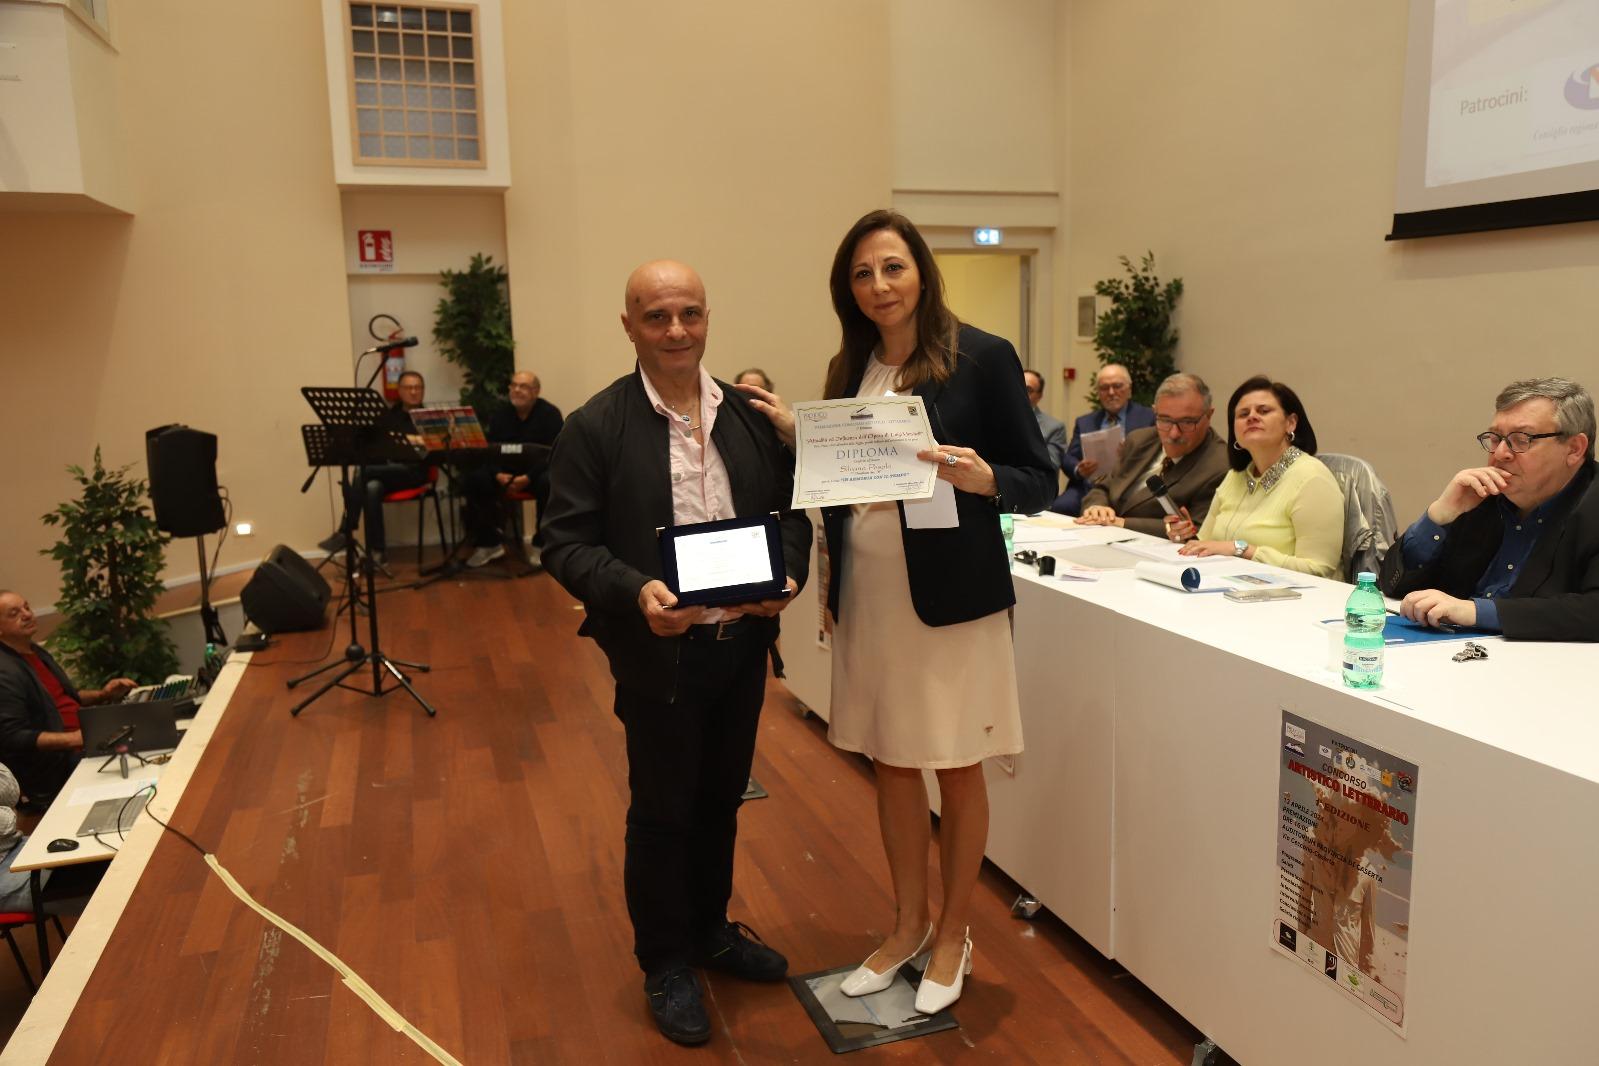 Termina con successo la prima edizione del Concorso Artistico Letterario organizzato dalla Pro Loco Città di Caserta Aps e dall’Associazione Artando APS.